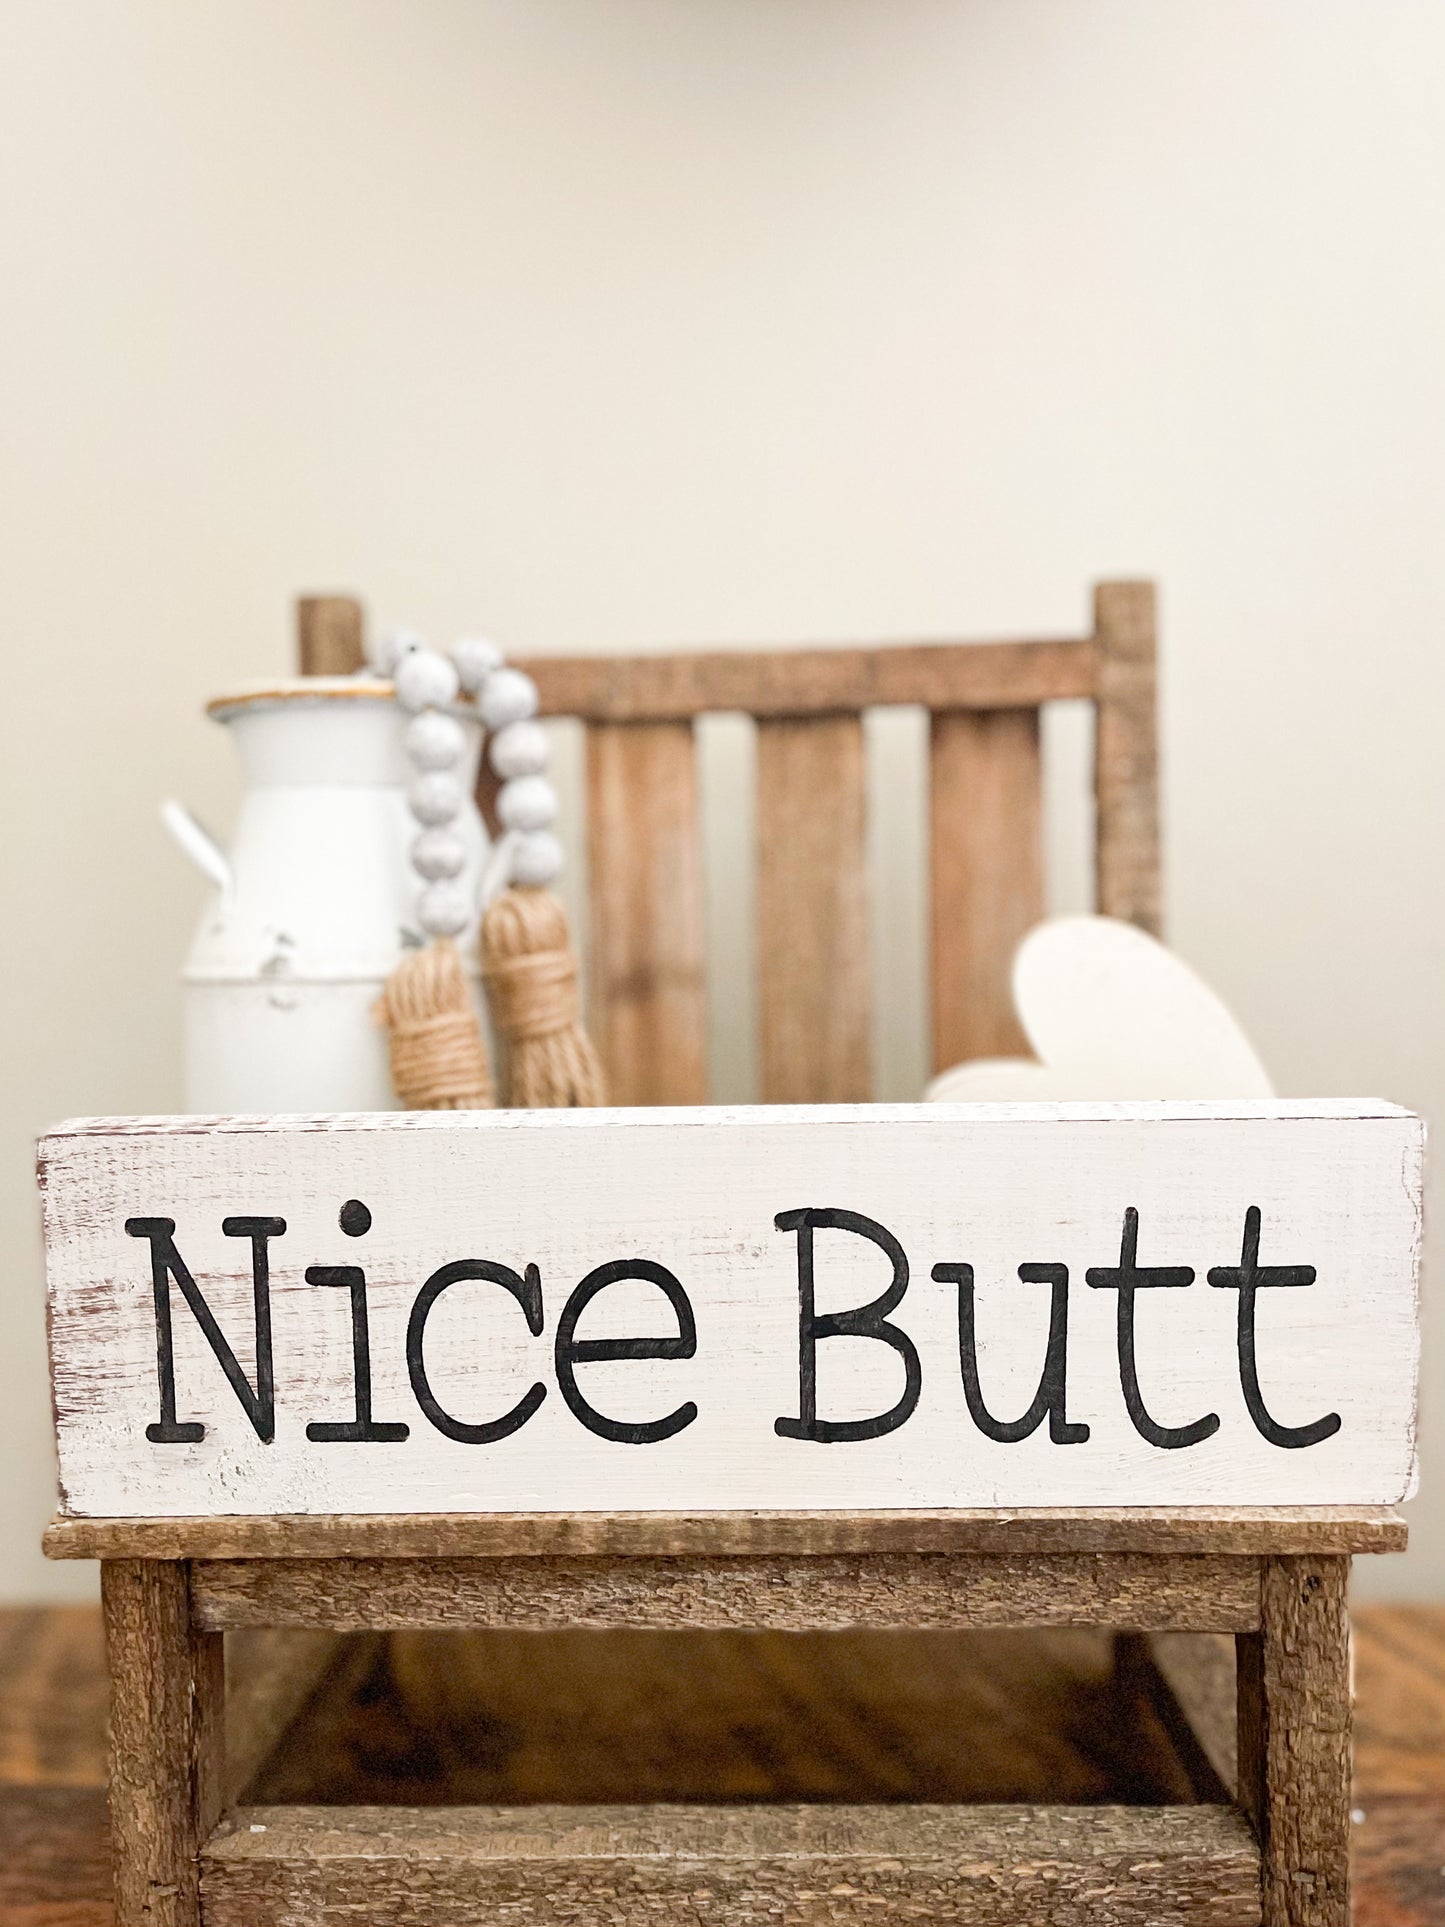 Nice butt sign